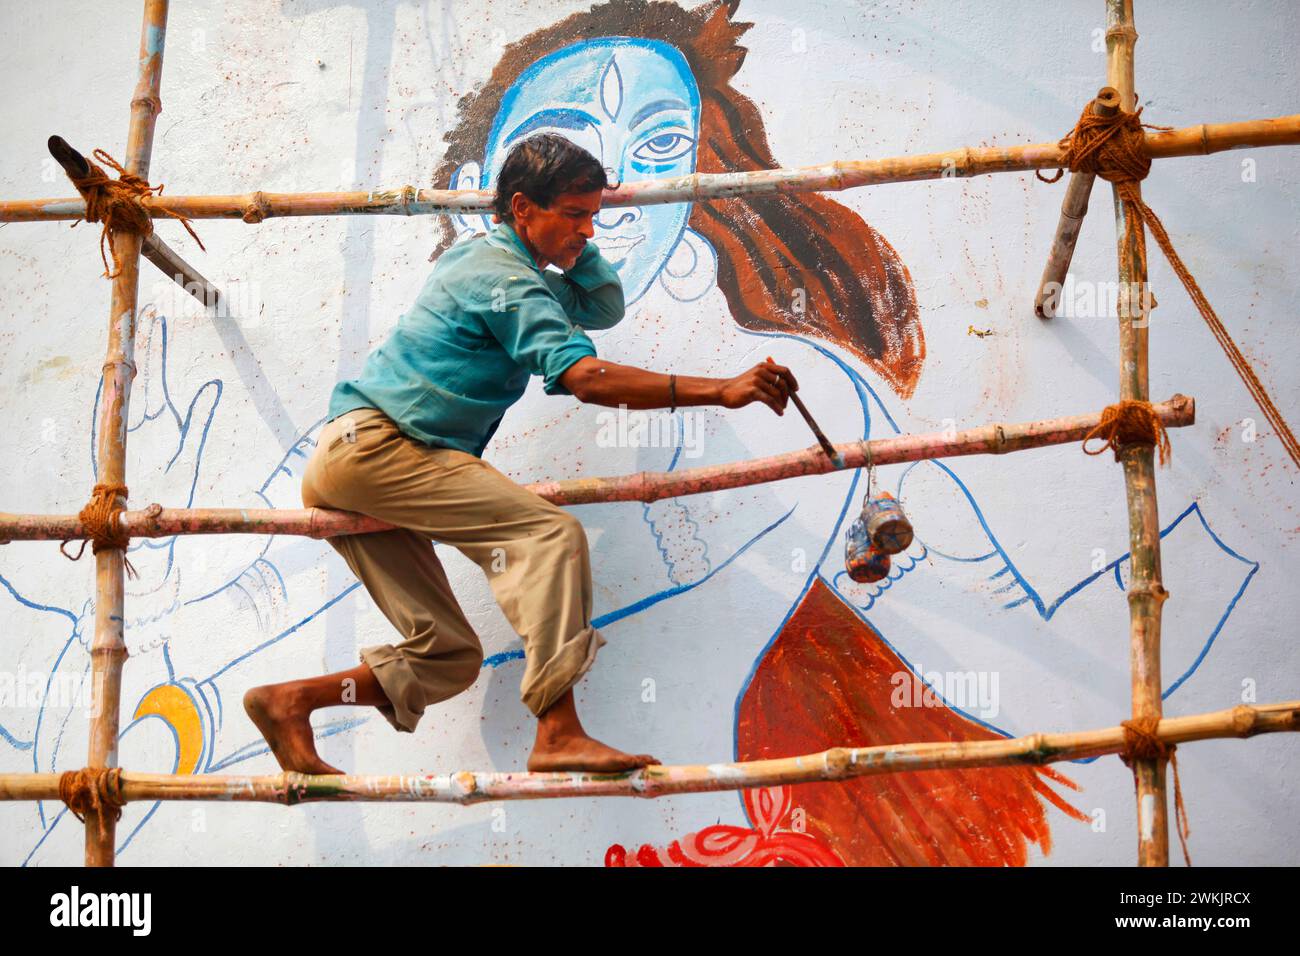 An artist painting the figure of the Indian deity 'Shiva' in a street in Varanasi, Uttar Pradesh, India. Stock Photo